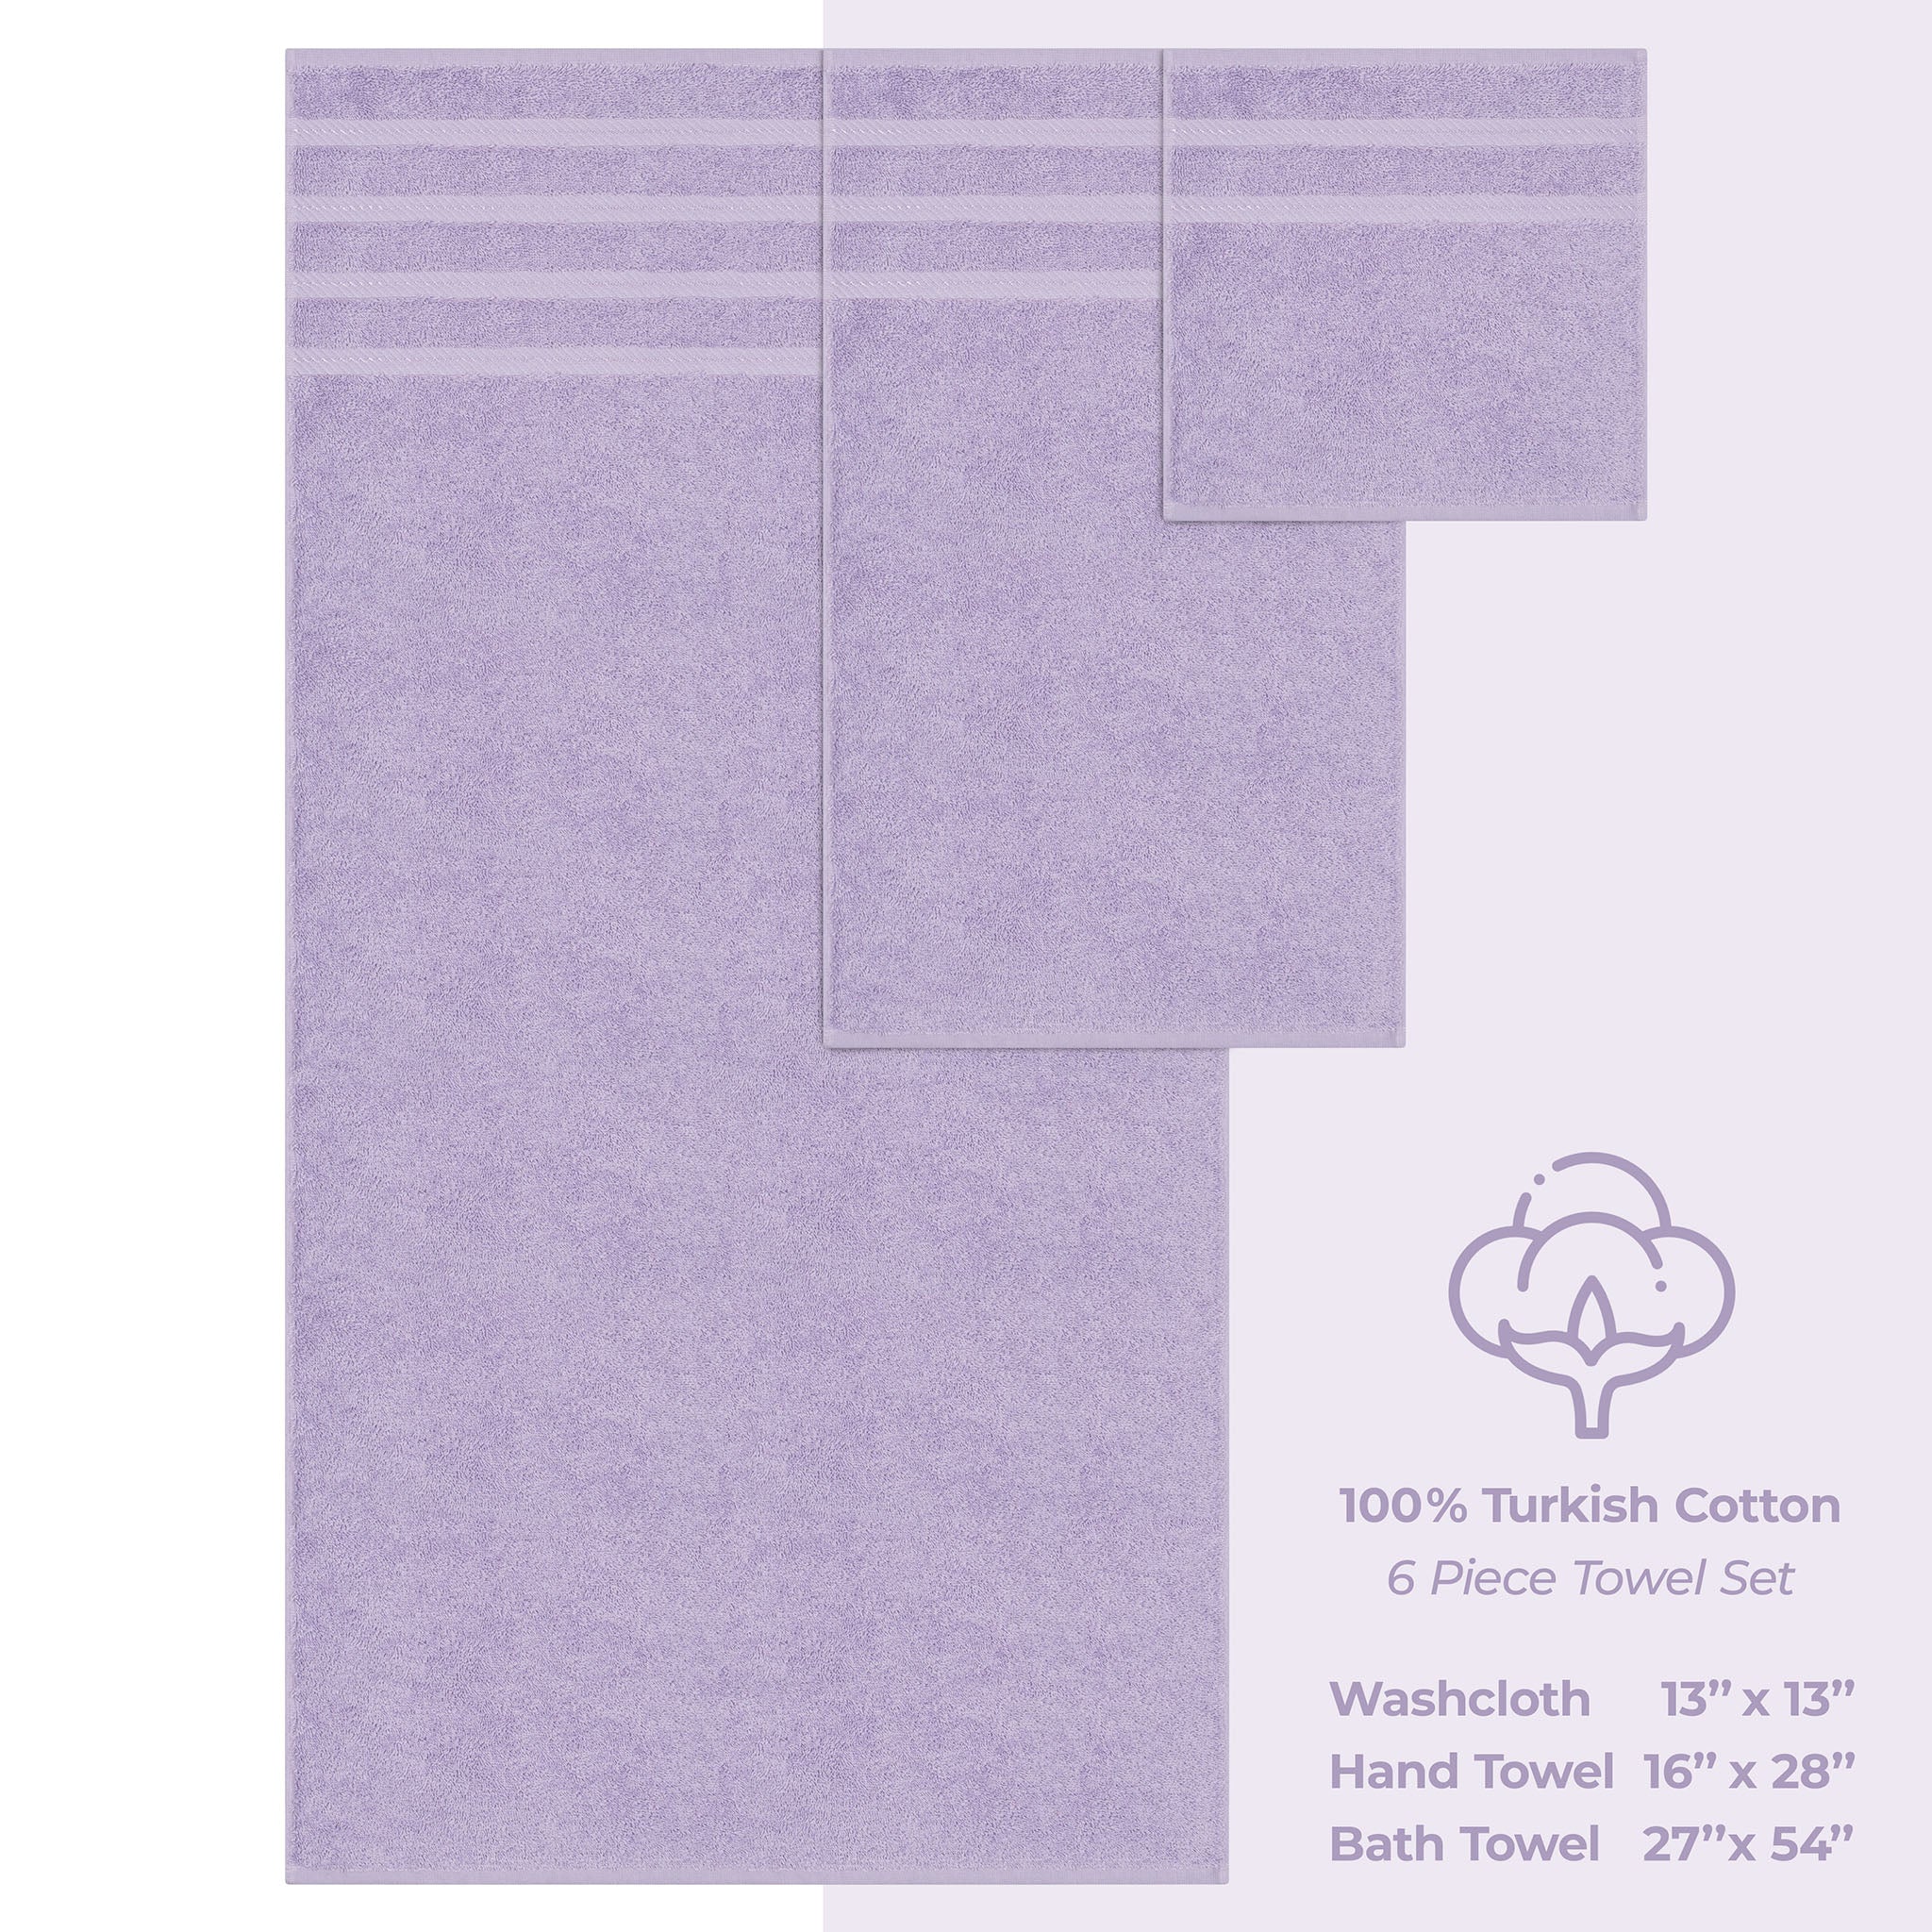 American Soft Linen 100% Turkish Cotton 6 Piece Towel Set Wholesale lilac-4